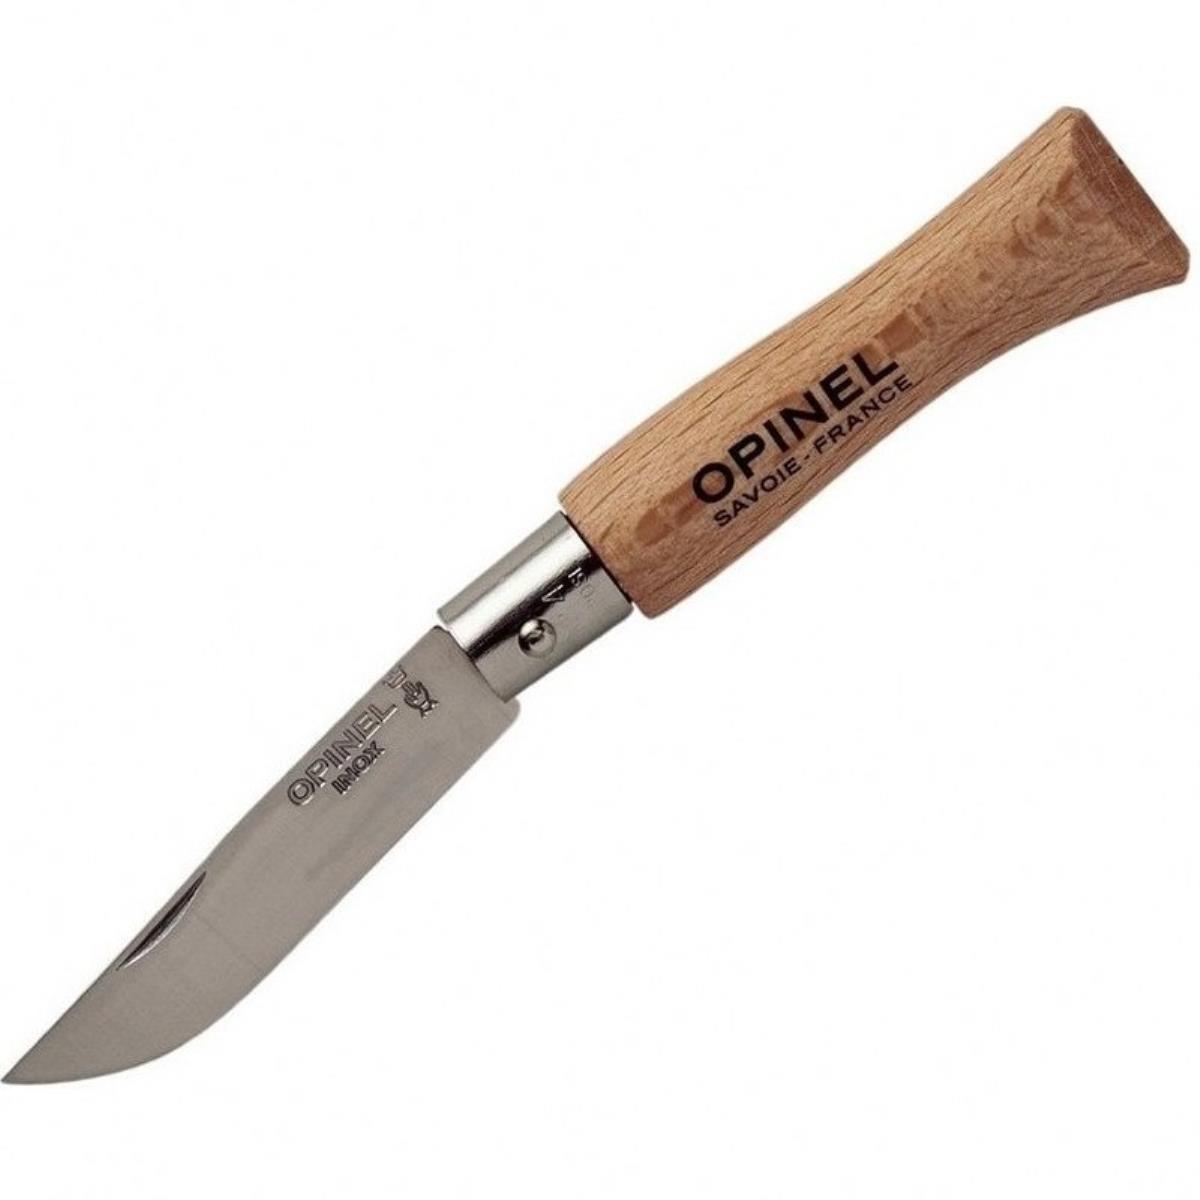 Нож №4 VRI Tradition Inox (нерж. сталь, рукоять бук, длина клинка 5 см) (1210401) OPINEL нож цельнометаллический охотник сталь m390 рукоять карбон